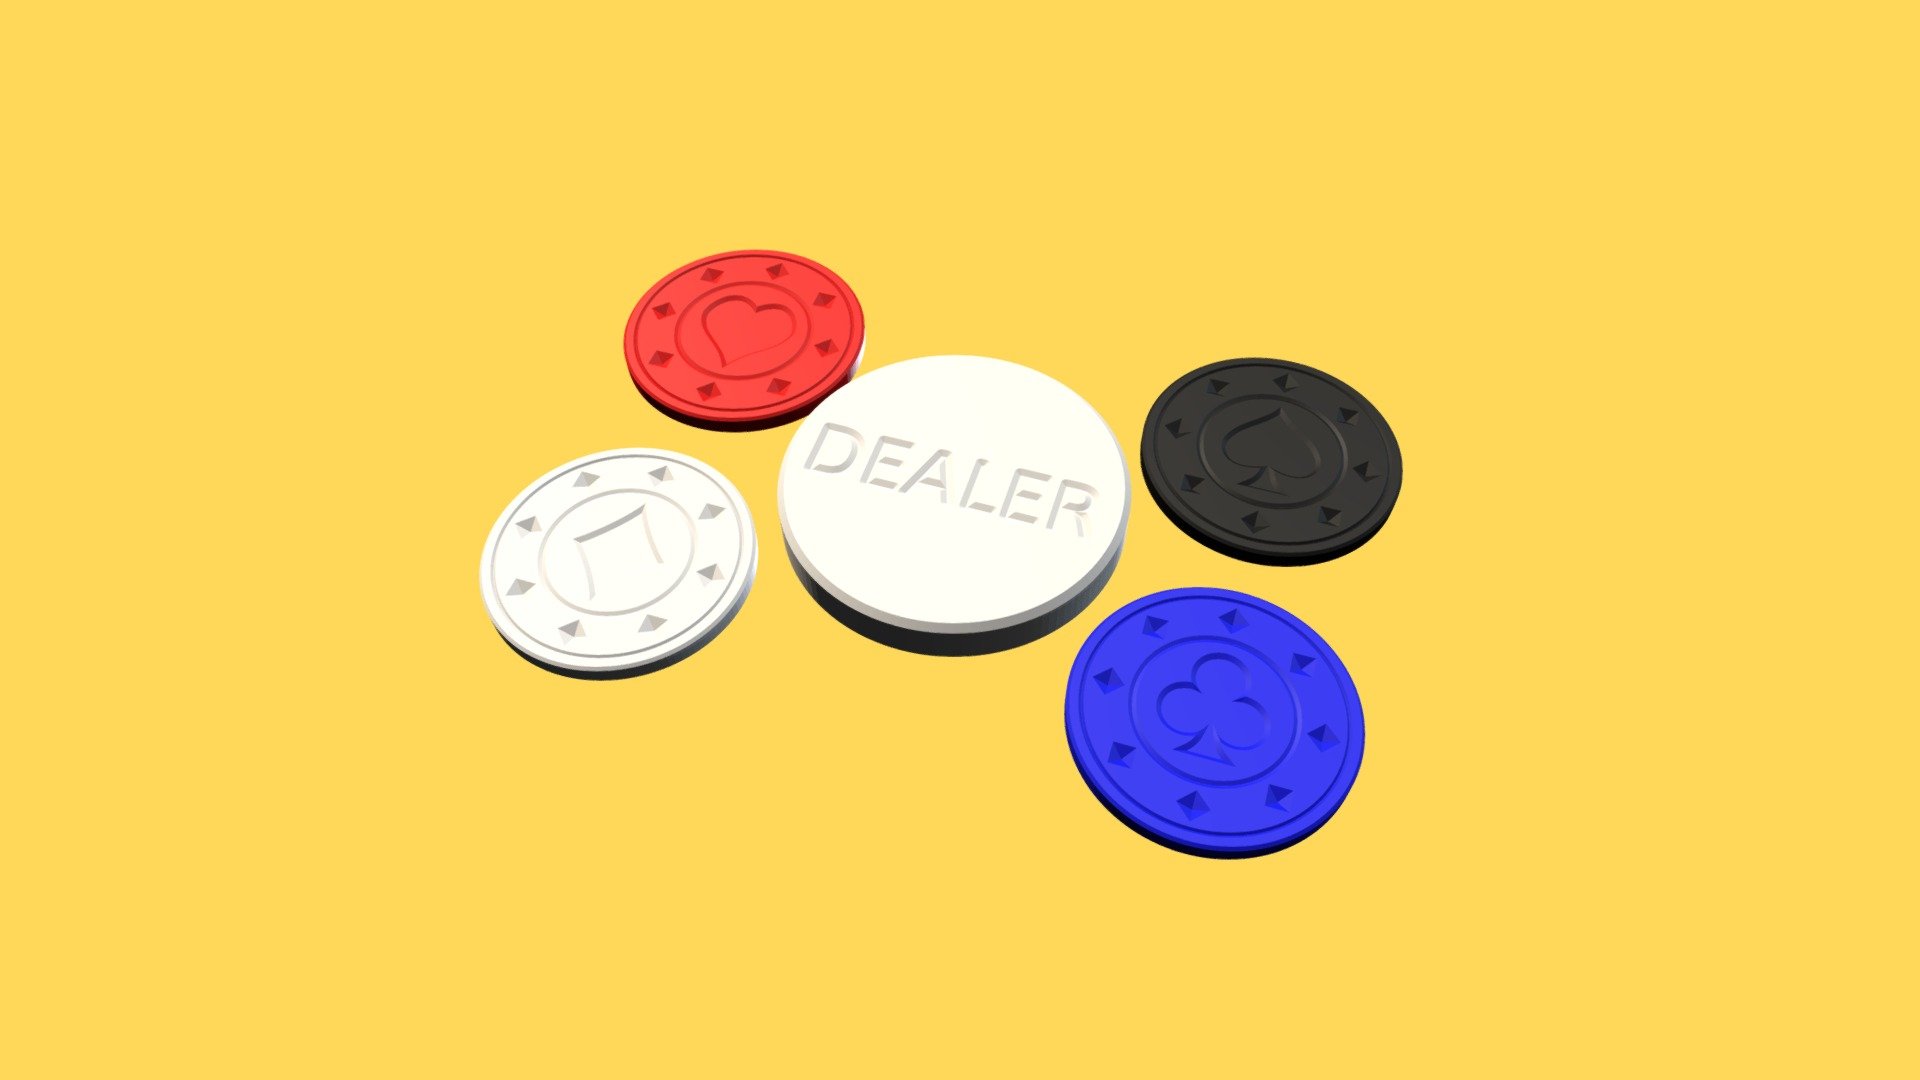 Pokerchips and Dealer button